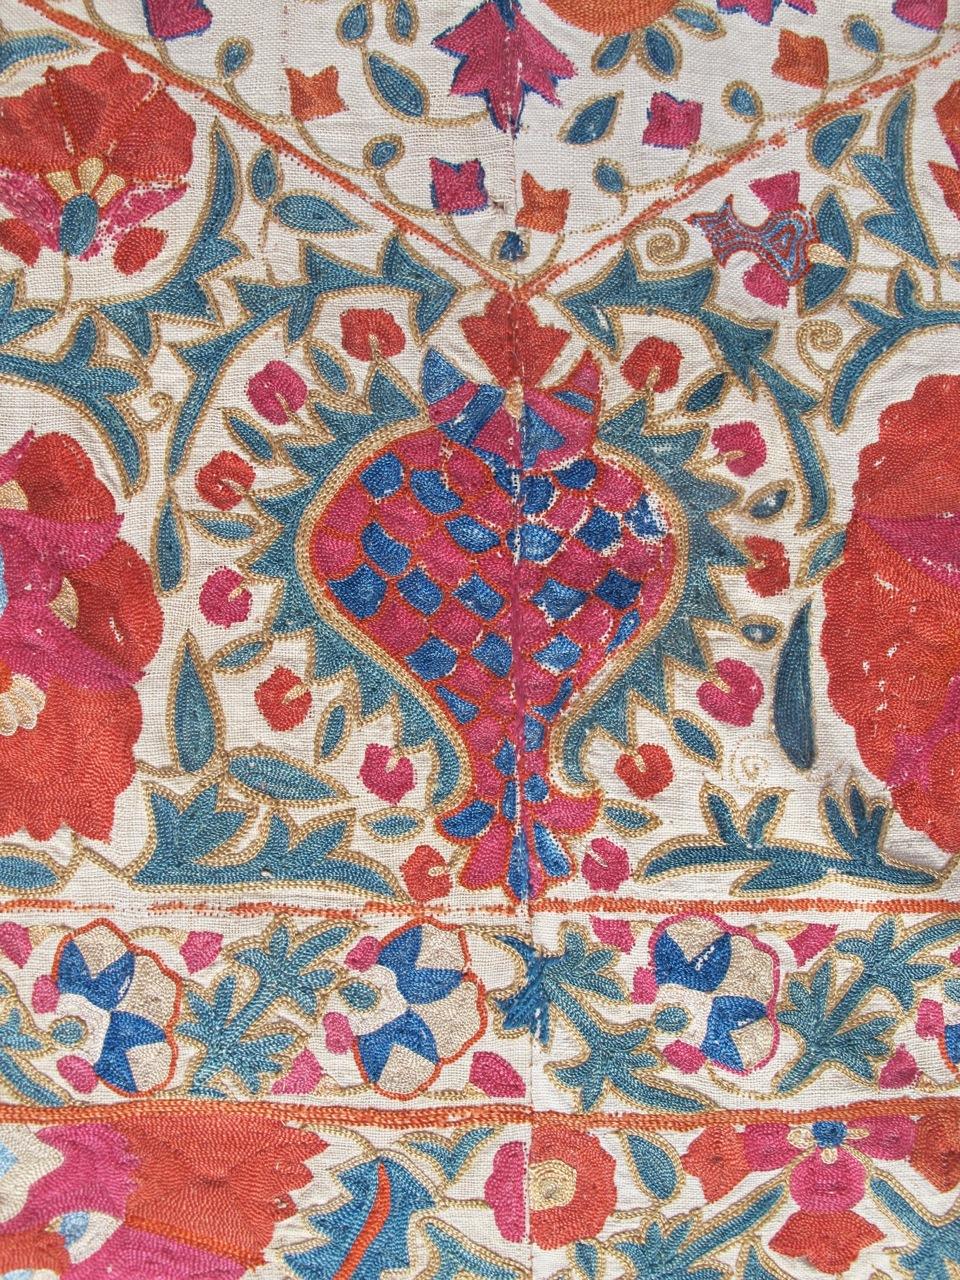 Hand-Knotted Antique Uzbek Kermina Suzani Textile, c. 1800 For Sale